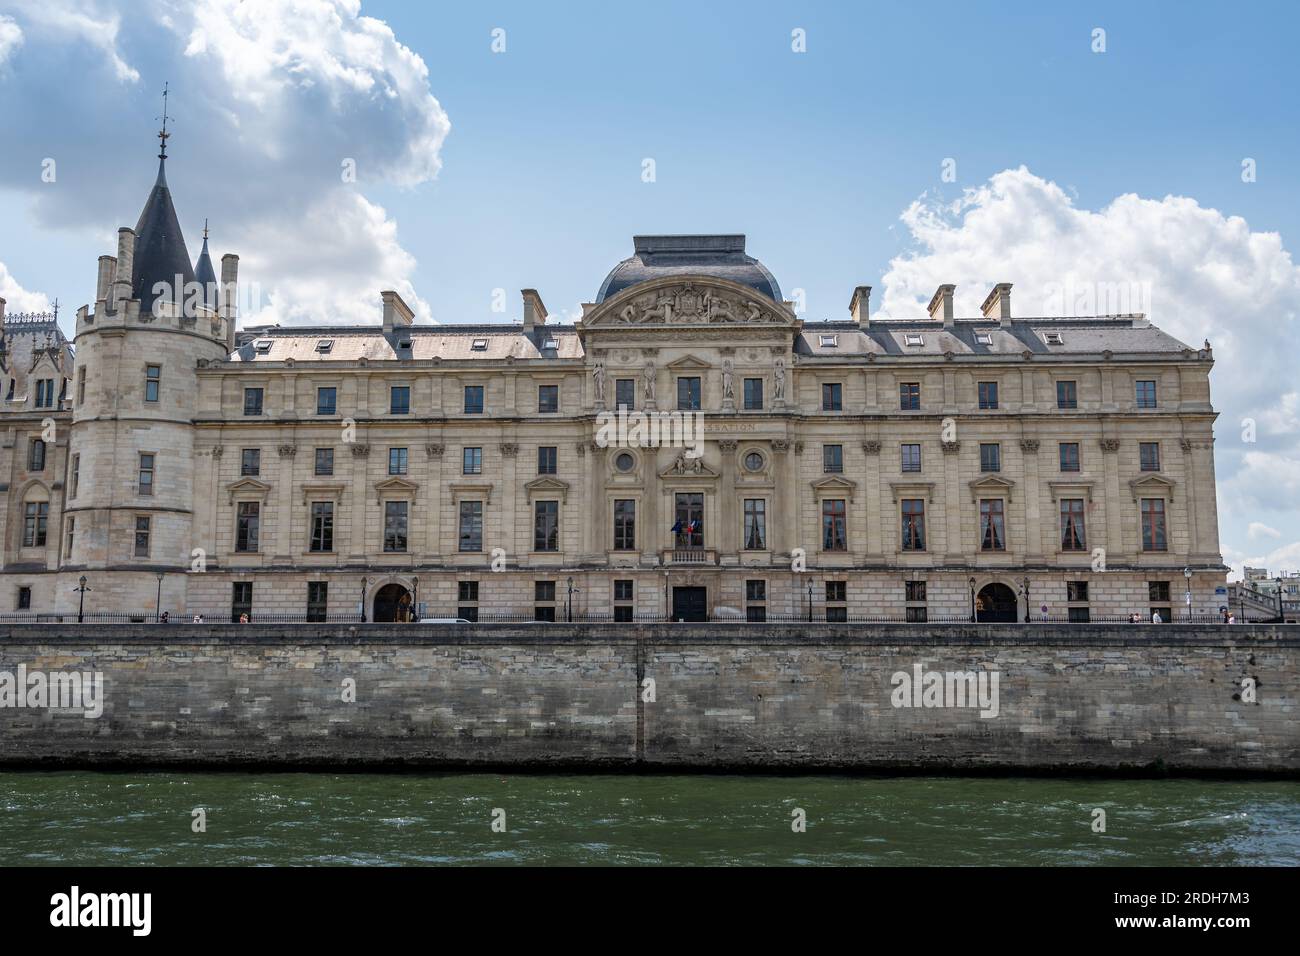 Vue lointaine du bâtiment abritant la Cour de Cassation, la plus haute juridiction du système judiciaire français Banque D'Images